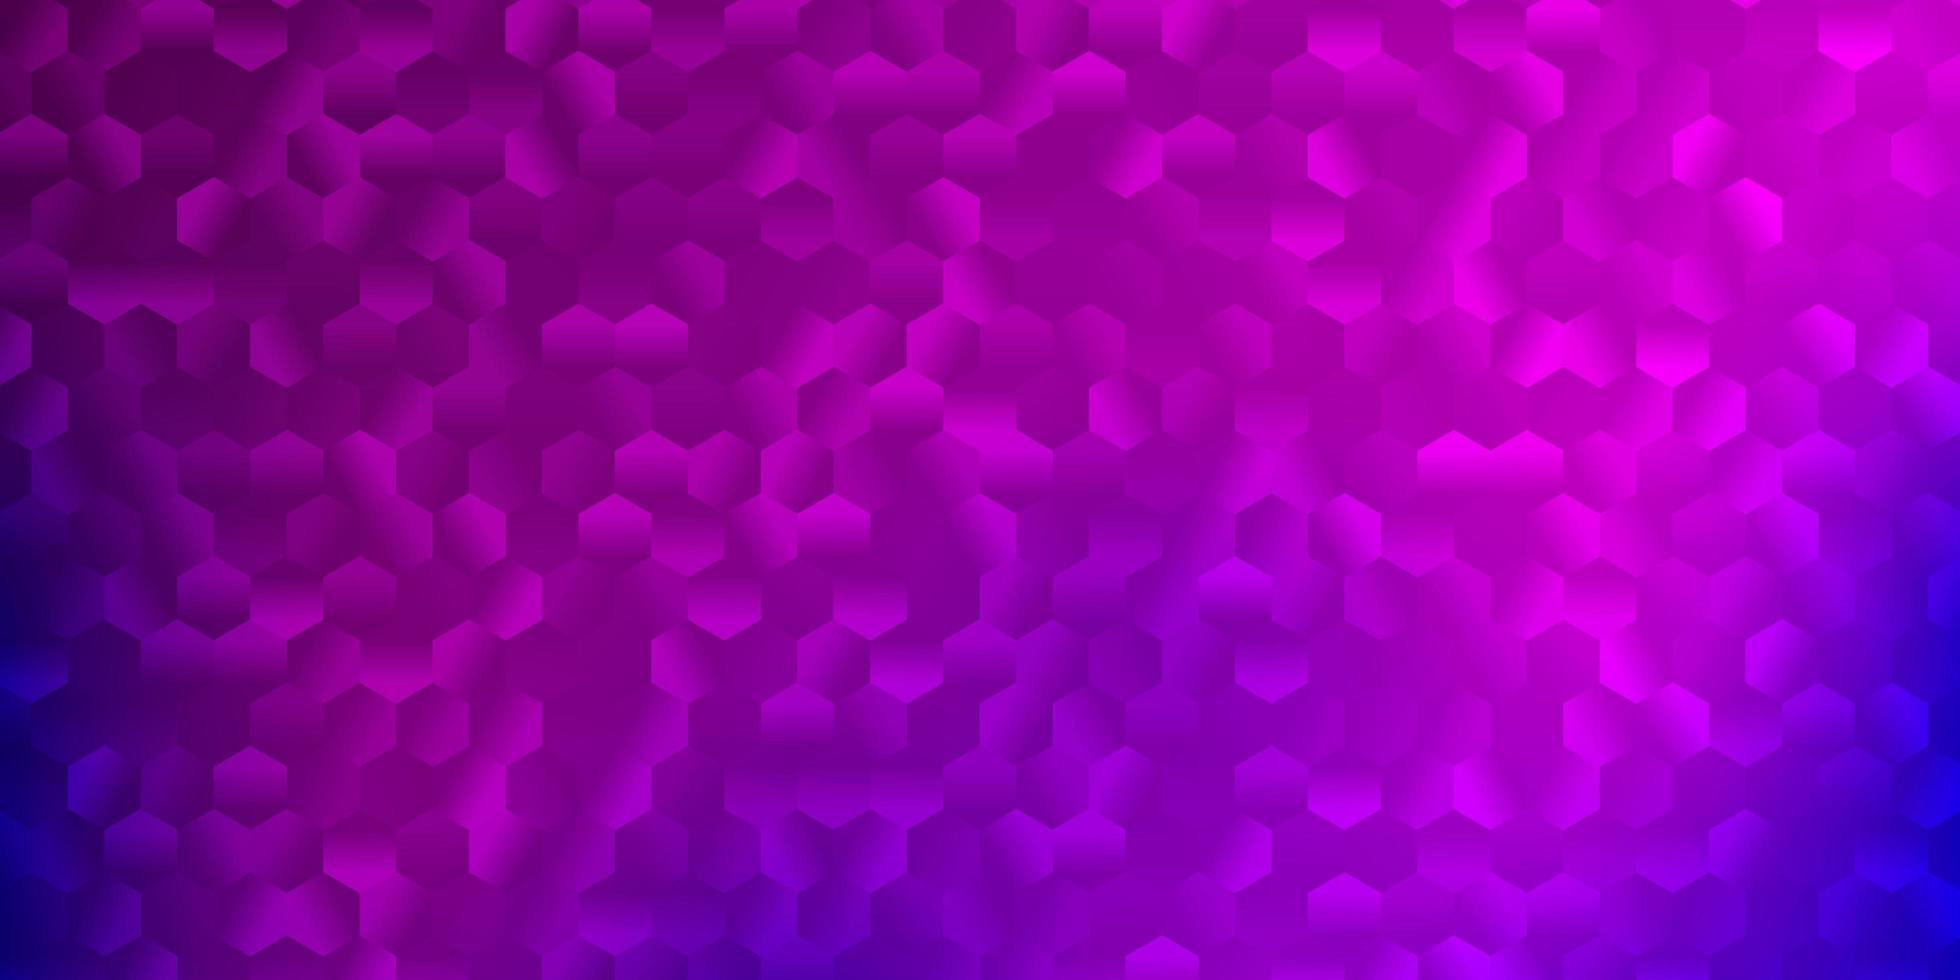 texture vettoriale viola chiaro, rosa con esagoni colorati.